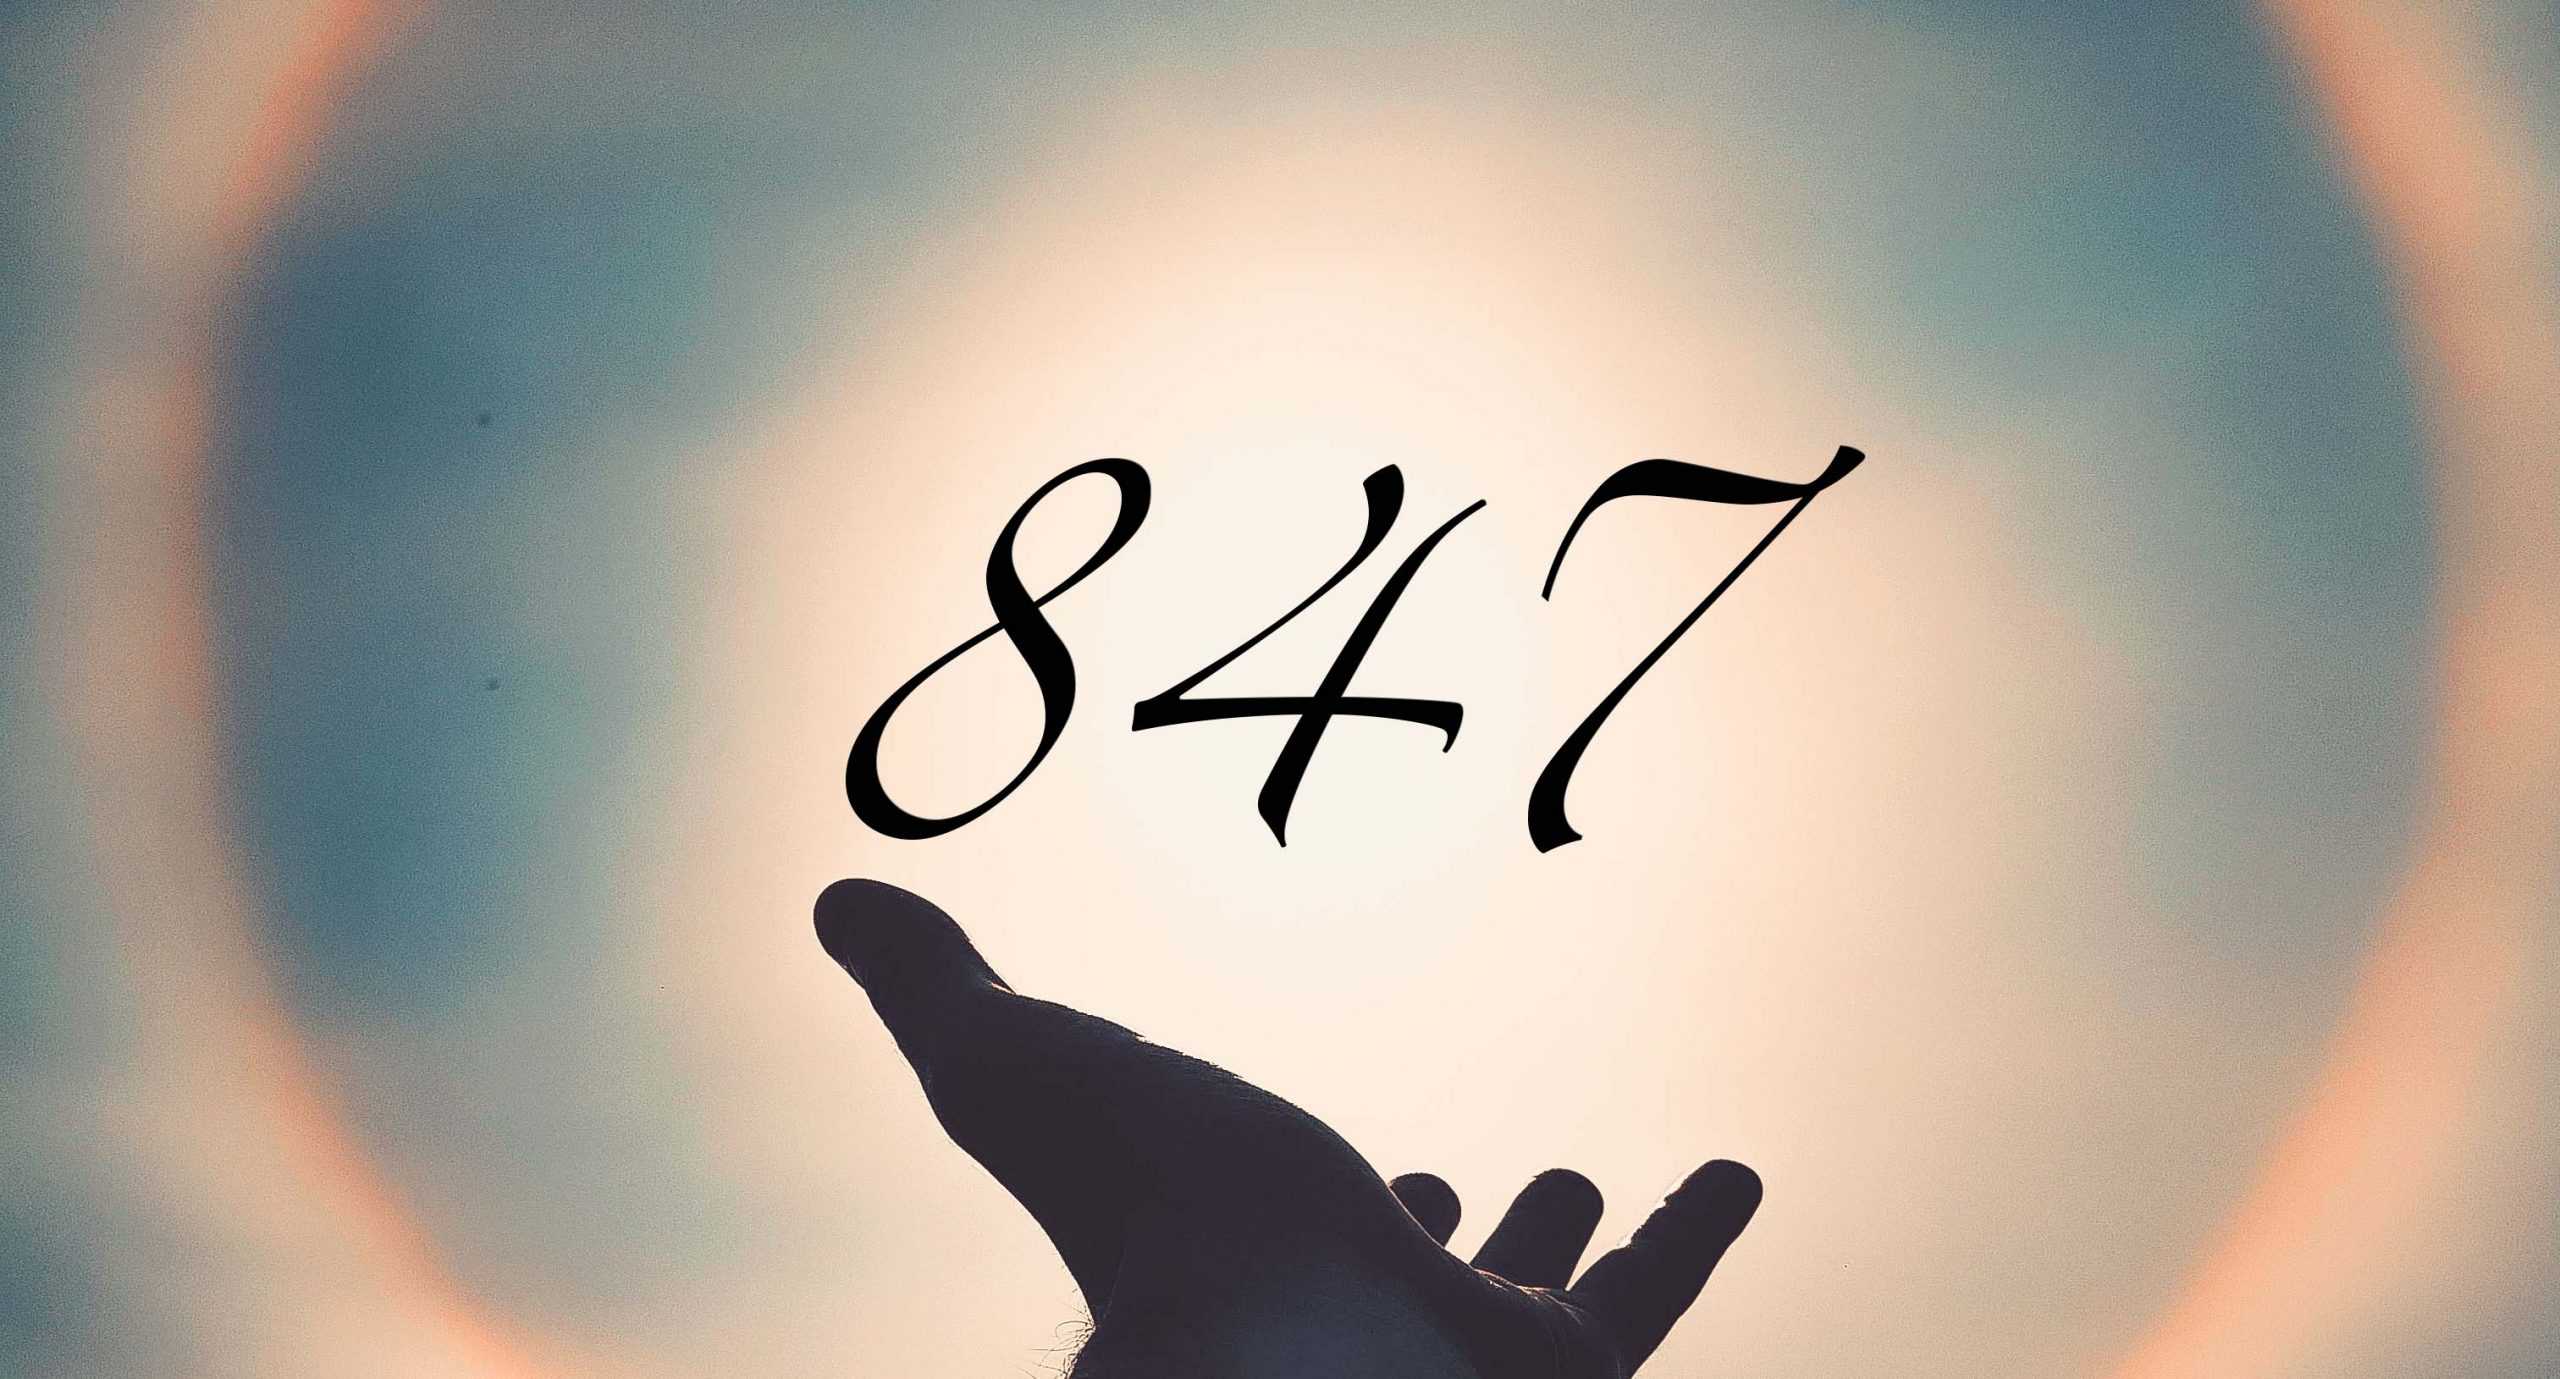 Signification du nombre 847